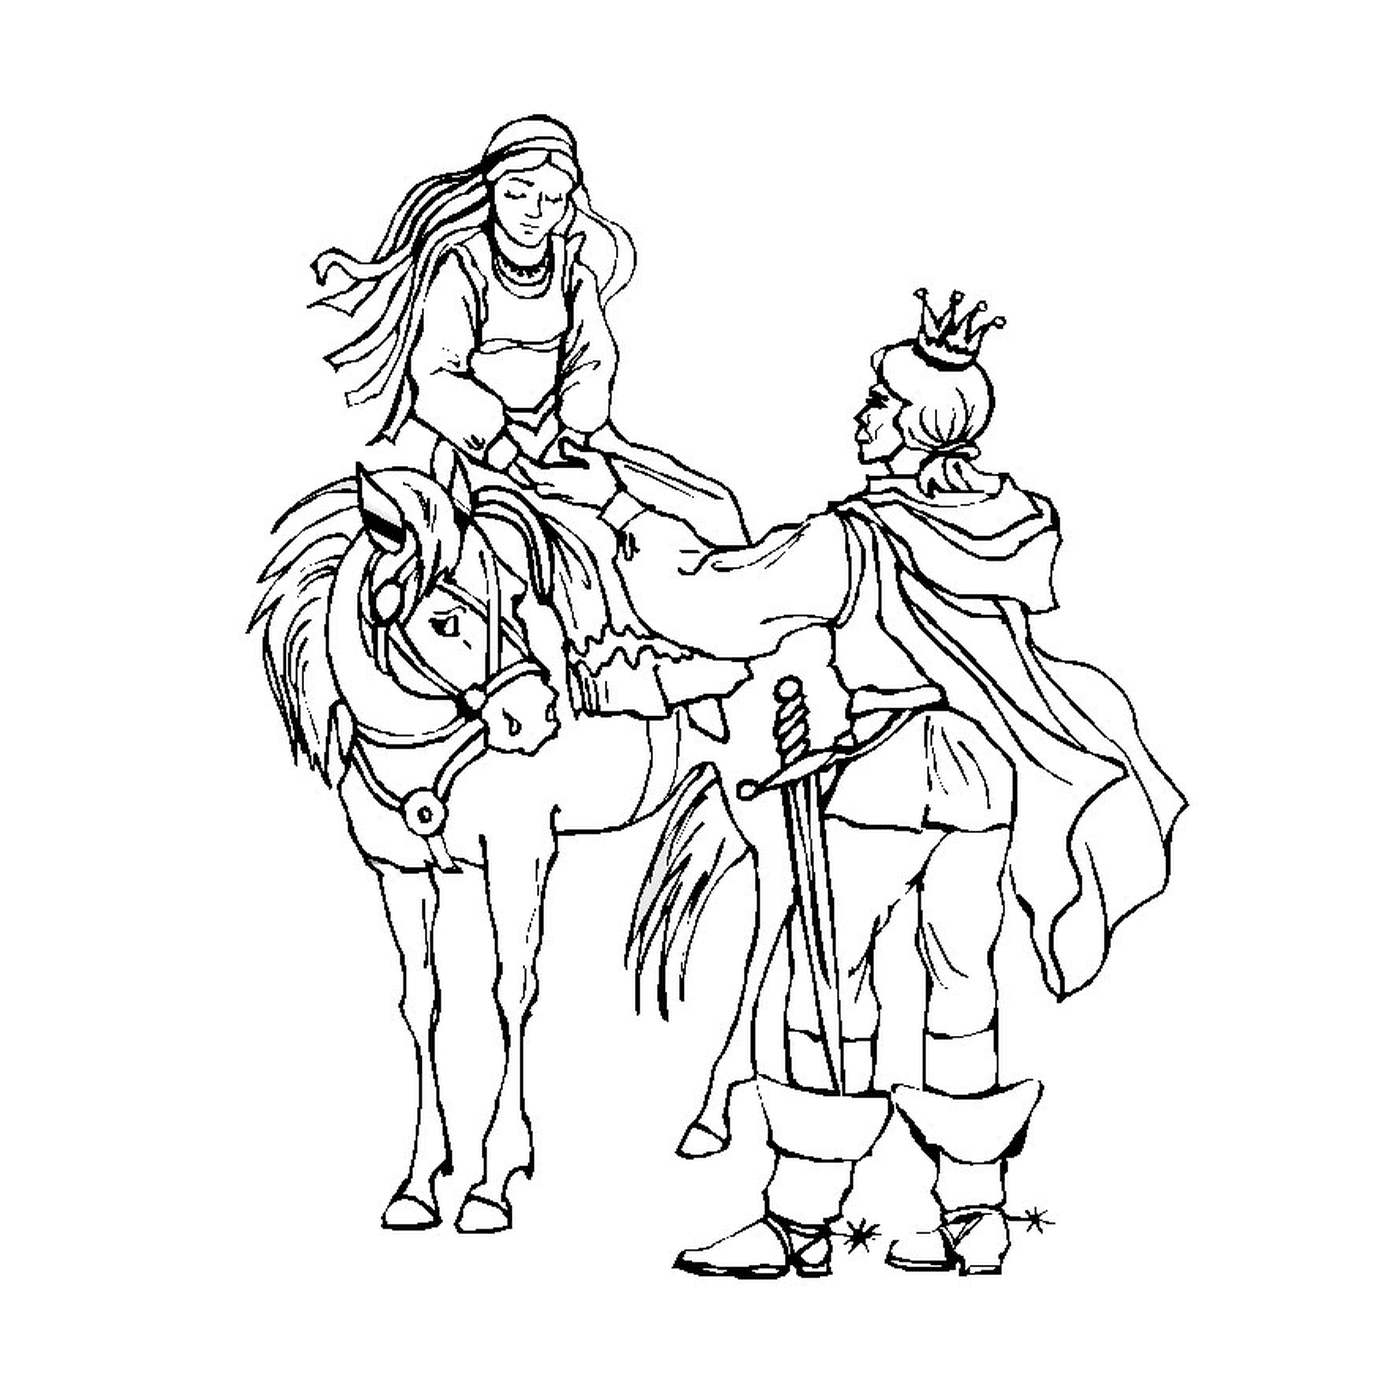  Königliches Paar reitet stolz auf einem Pferd 